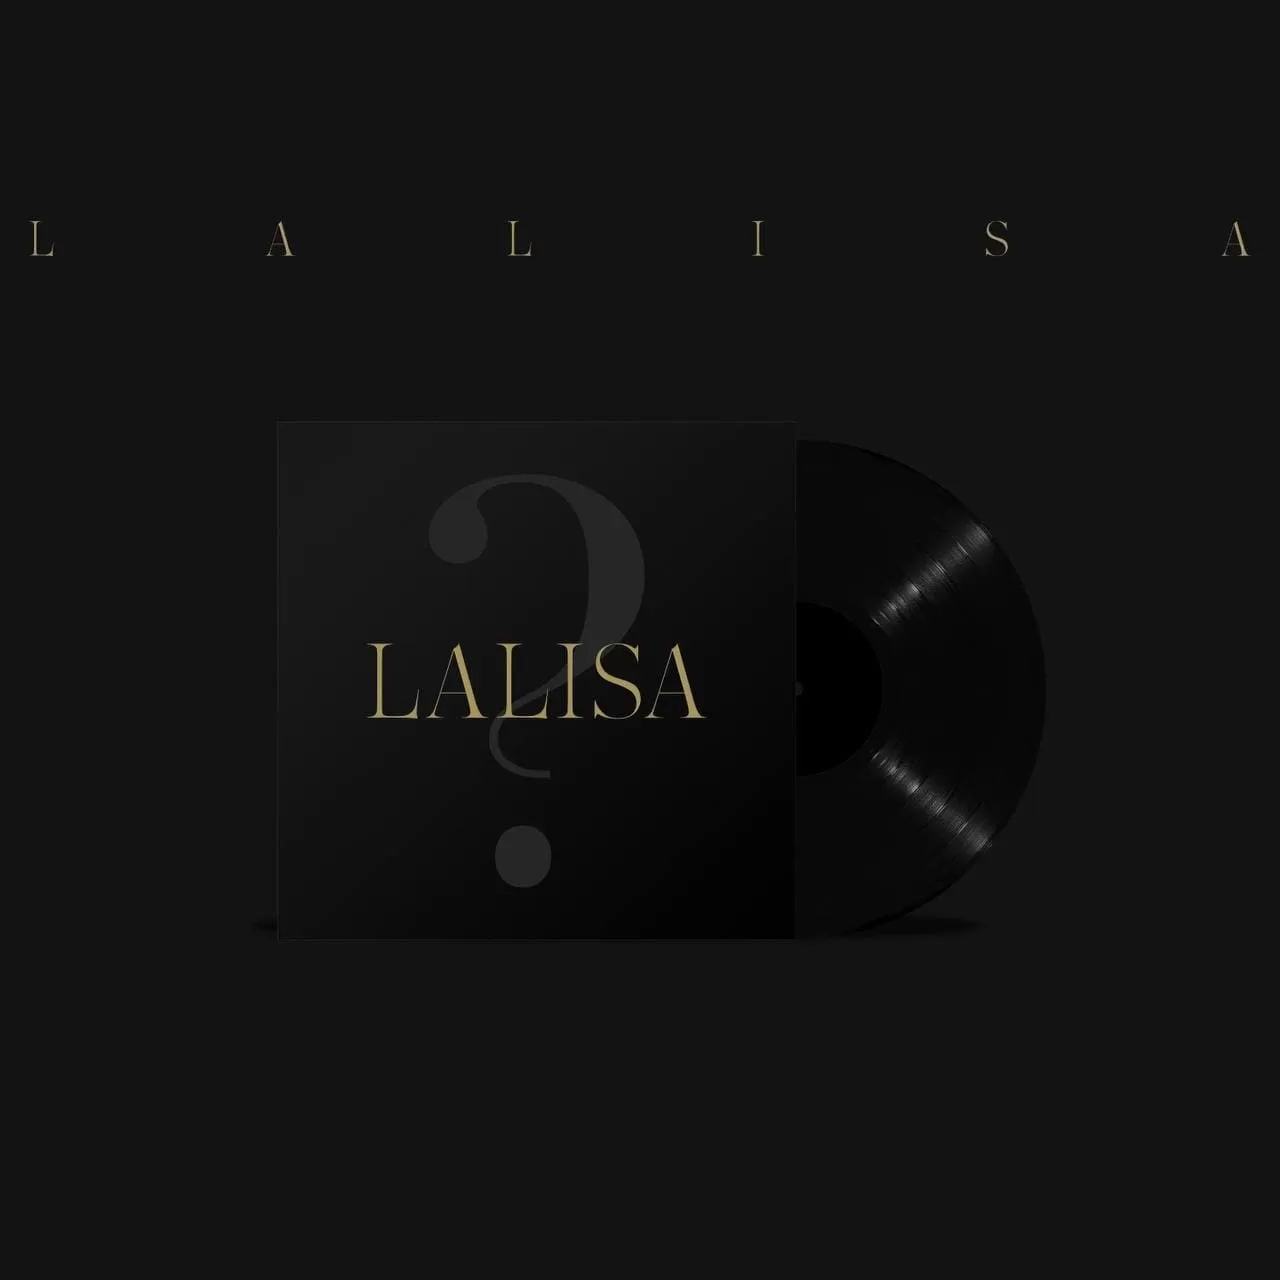 دانلود آلبوم جدید LISA (BLACKPINK) به نام Lalisa